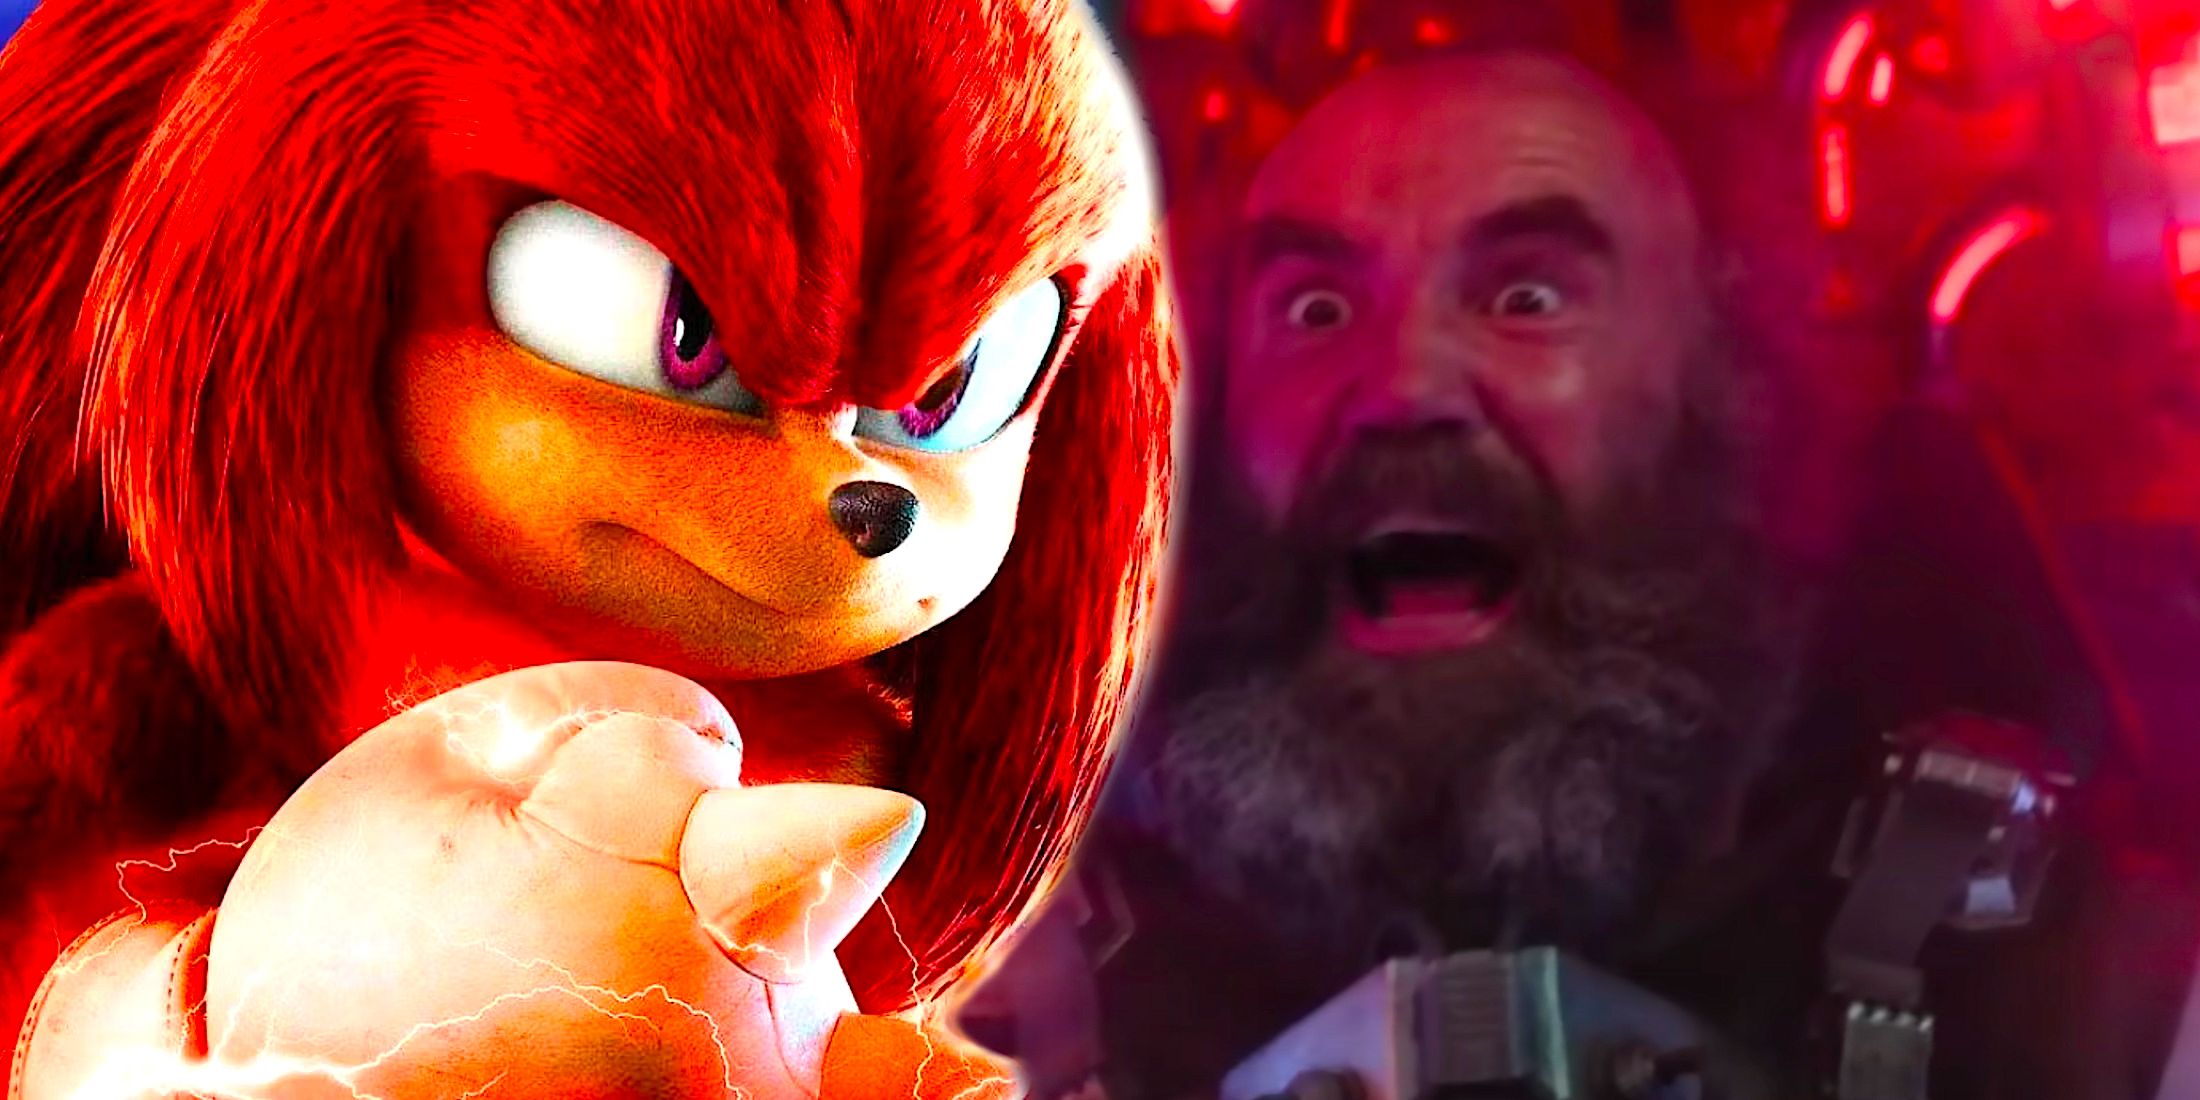 El jefe final de Knuckles hace que el futuro villano de Sonic The Hedgehog sea aún más emocionante